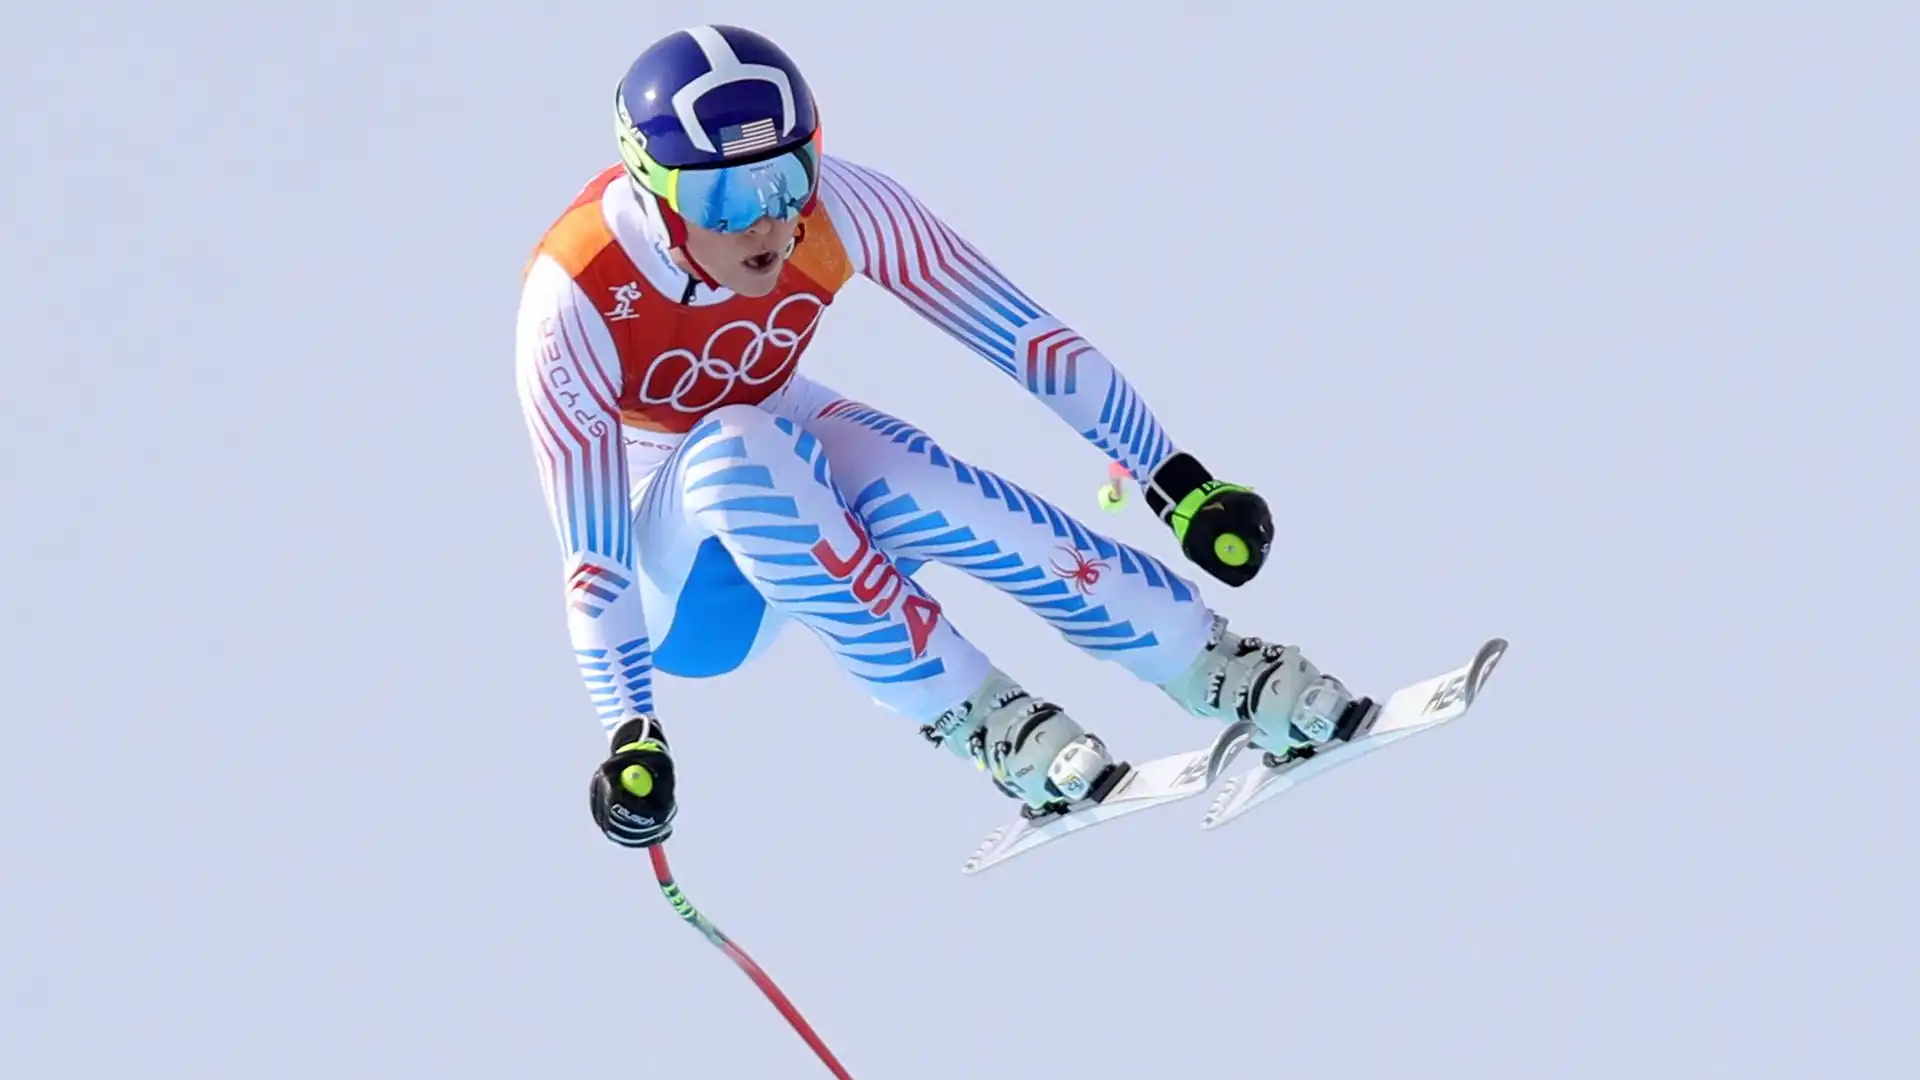 Nel palmarès di Lindsey c'è un oro olimpico, due ori iridati, quattro Coppe del Mondo generali e sedici di specialità; è la sciatrice più vincente della storia dello sci alpino (con 82 successi) ed è uno dei pochi atleti ad avere vinto almeno una gara di Coppa del Mondo in ognuna delle specialità dello sci alpino.